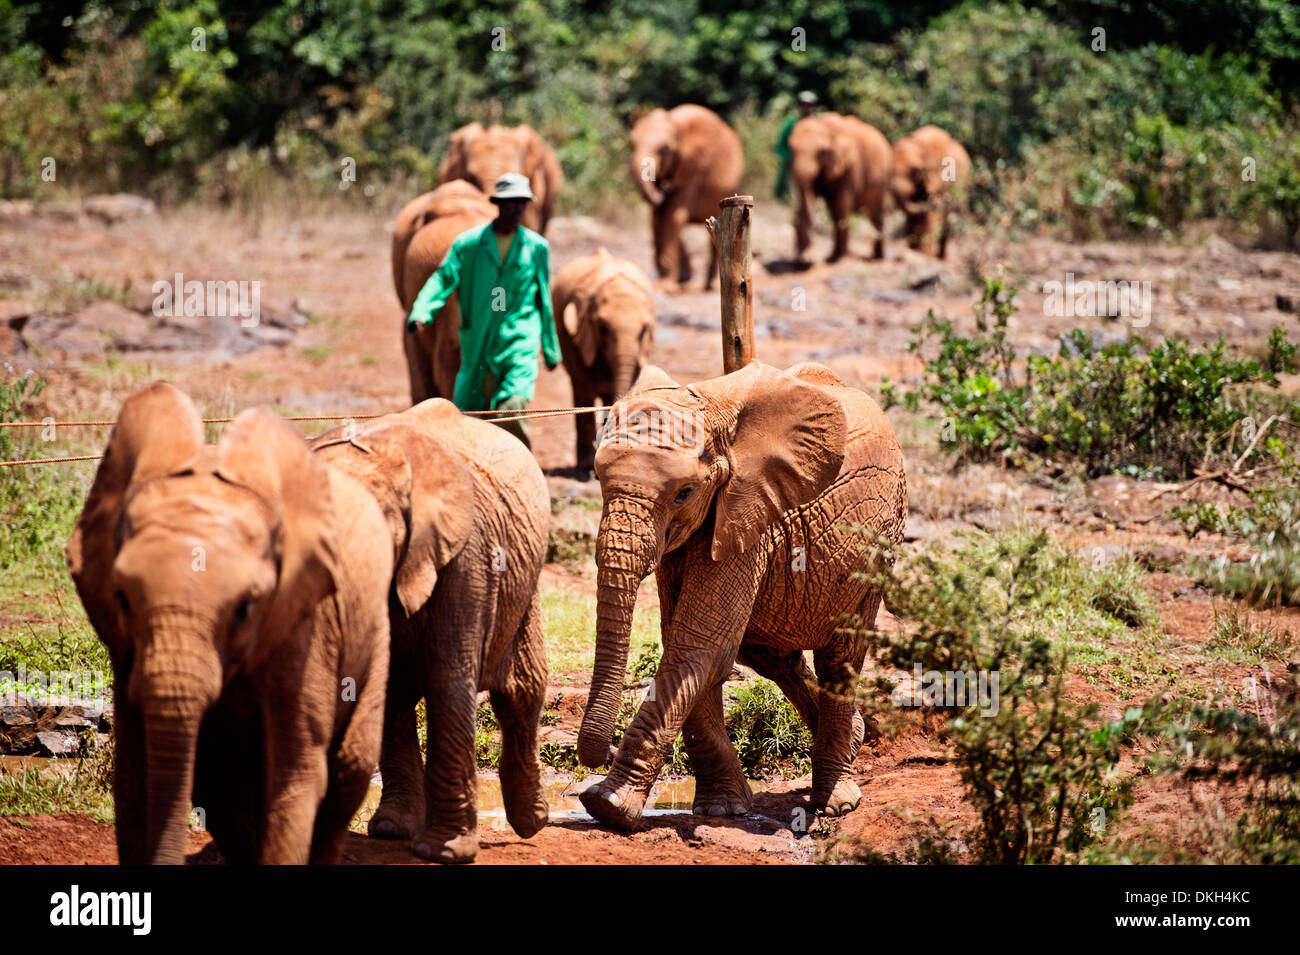 Le David Sheldrick orphelinat des éléphants éléphants juvéniles en prend, Loxodonta africana braconniers orphelins, Nairobi, Kenya, Afrique Banque D'Images